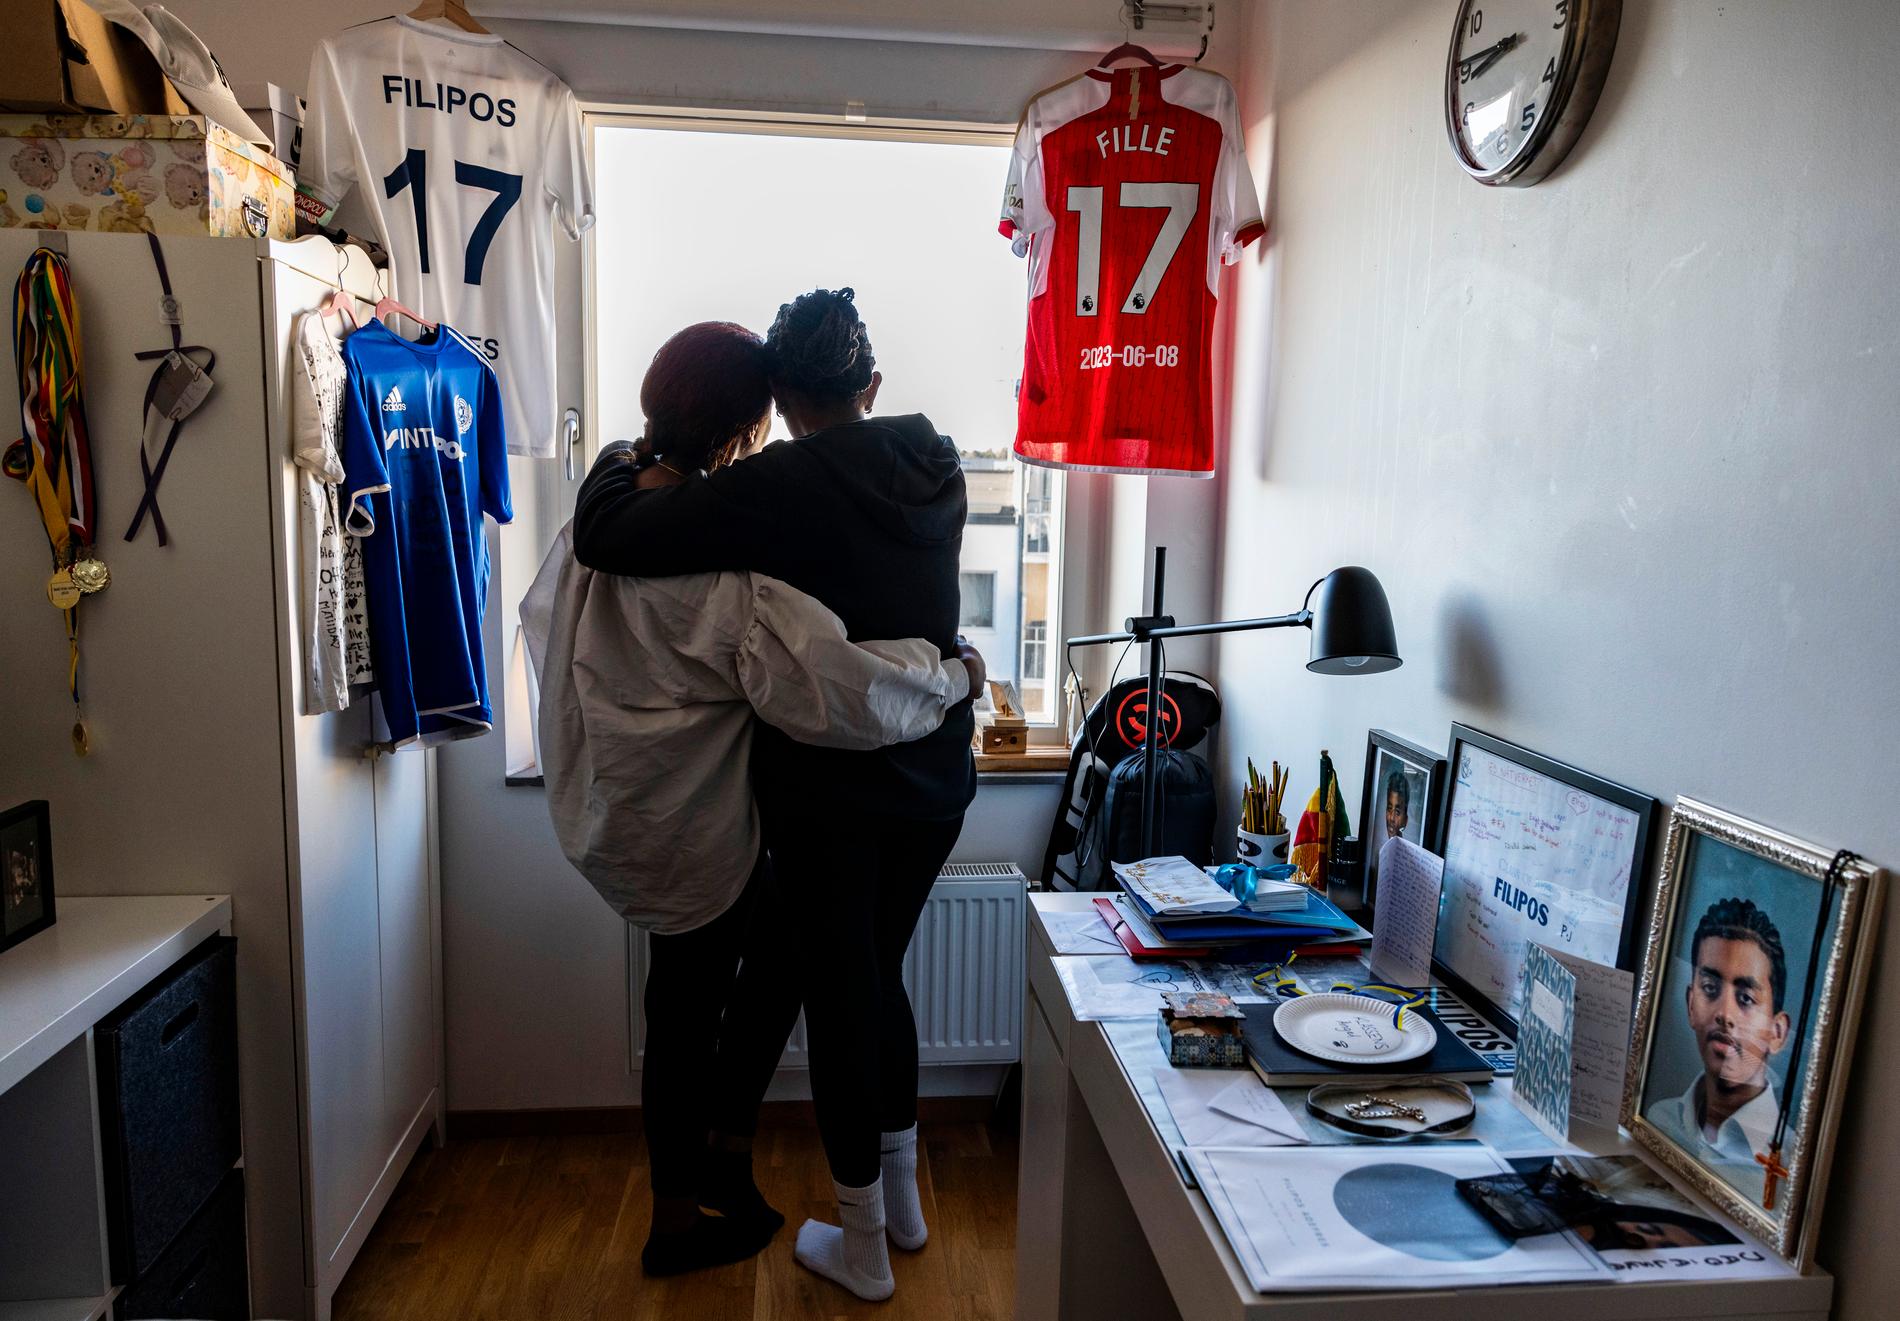 Filipos rum i lägenheten i Älvsjö står orört. Här har familjen samlat mängder av hälsningar från vänner, familjemedlemmar och släktingar.